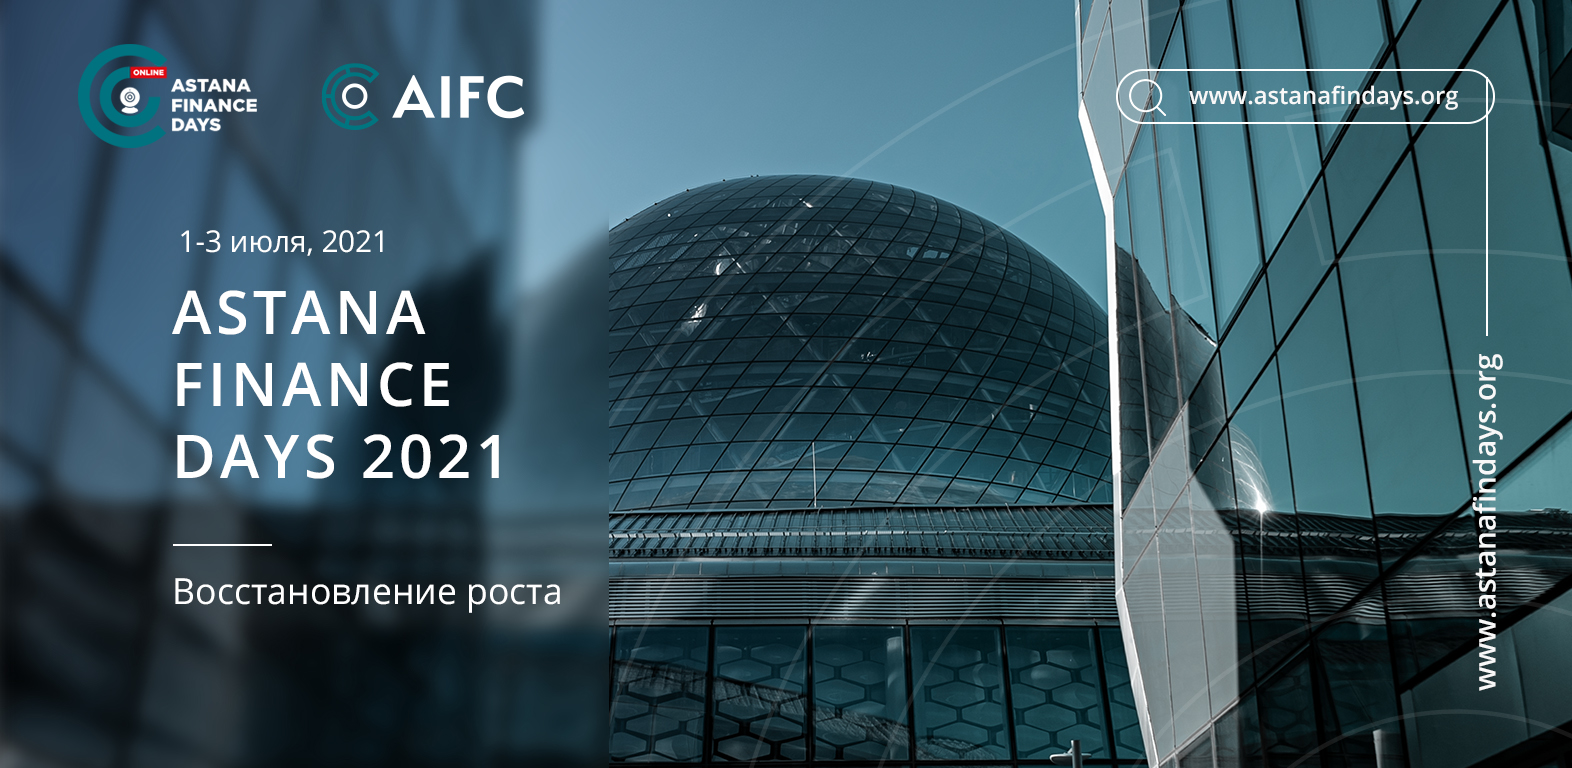 Регистрация на конференцию ASTANA FINANCE DAYS 2021 открыта!